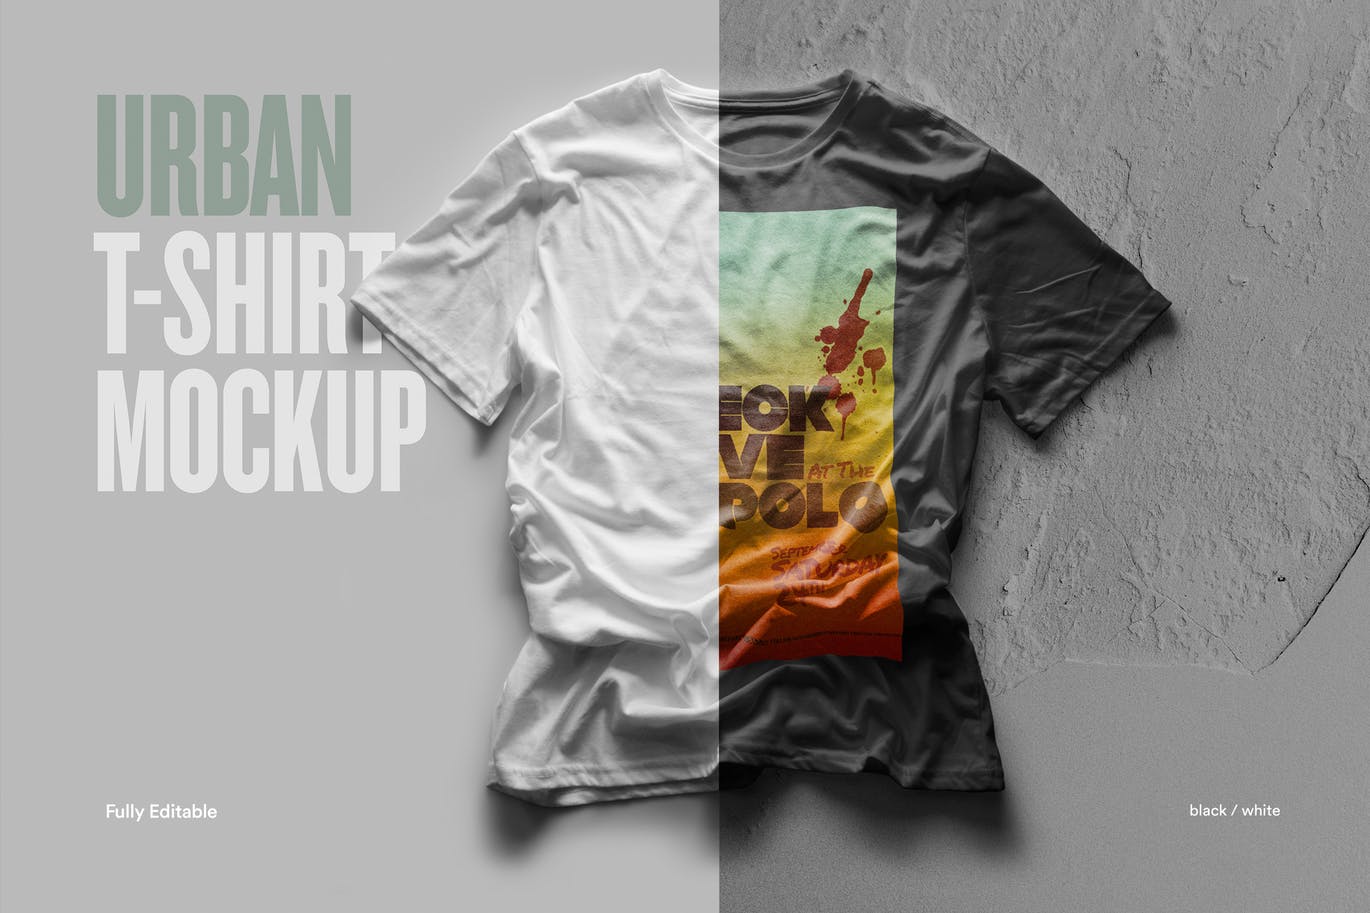 都市风格T恤印花图案设计预览样机非凡图库精选 Urban T-Shirt Mock-Up插图